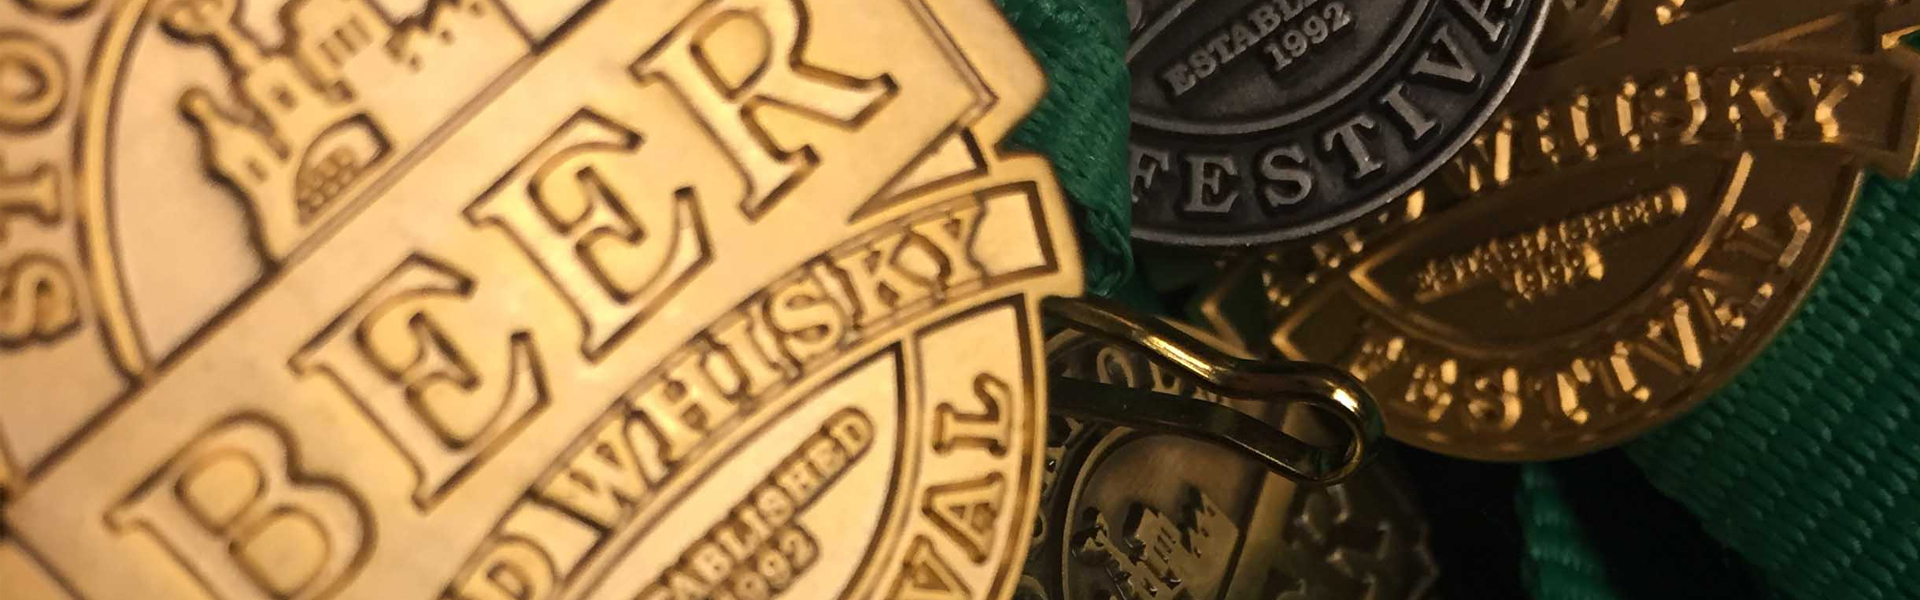 Medaljregn över TOMP’s produkter på Stockholm Beer & Whisky Festival